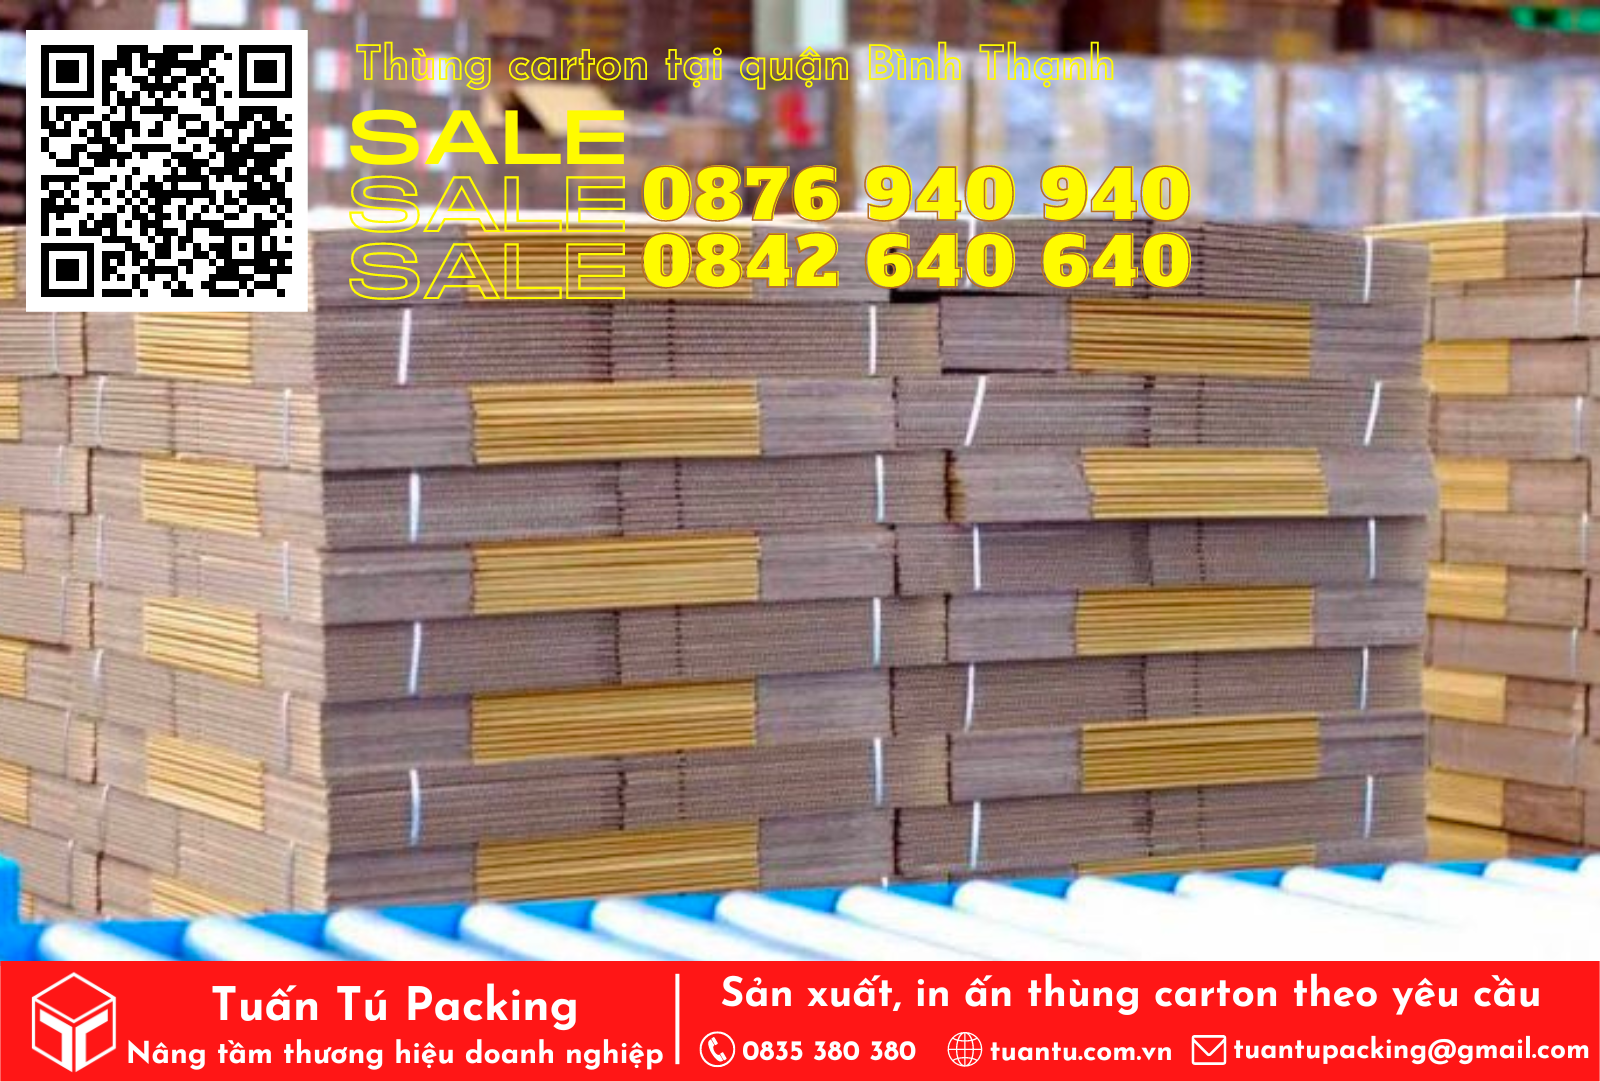 Tuấn Tú - Chuyên cung cấp thùng carton tại quận Bình Thạnh HCM